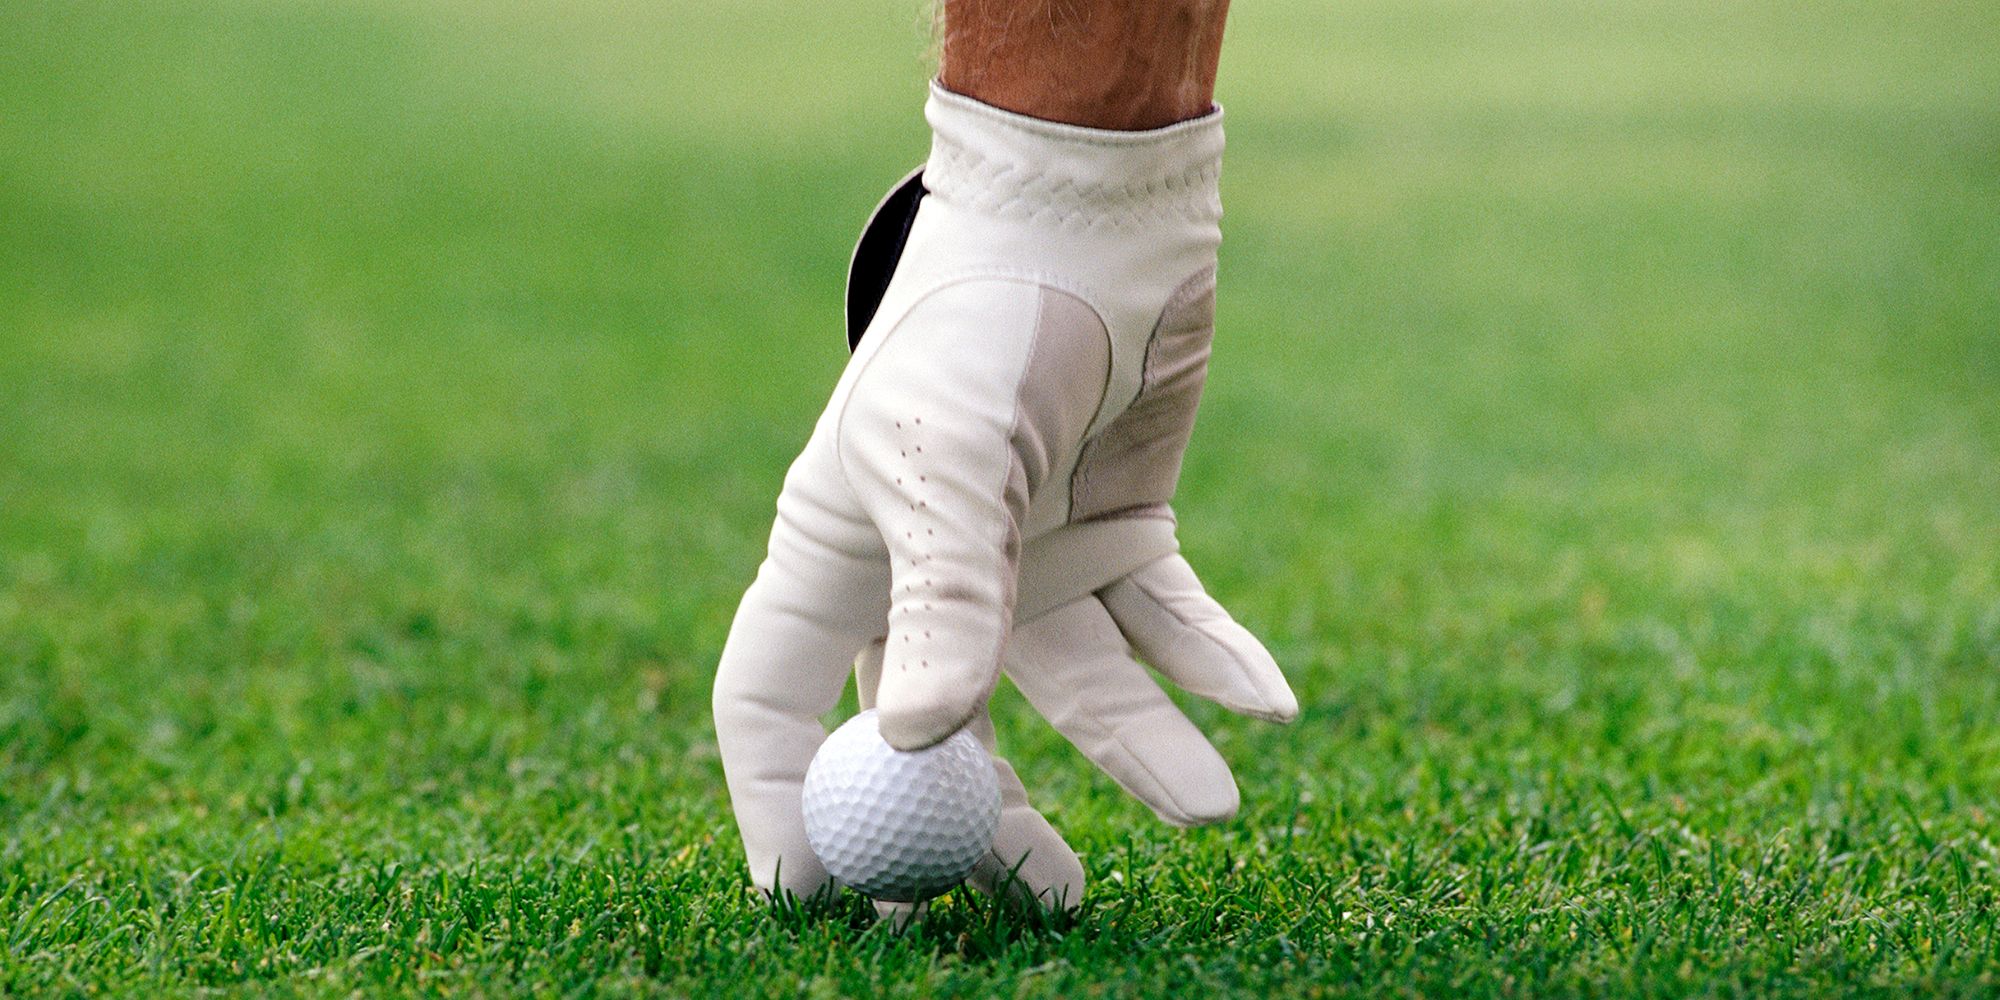 9 Best Golf Gloves for a Better Grip - Men's & Women's Golf Gloves